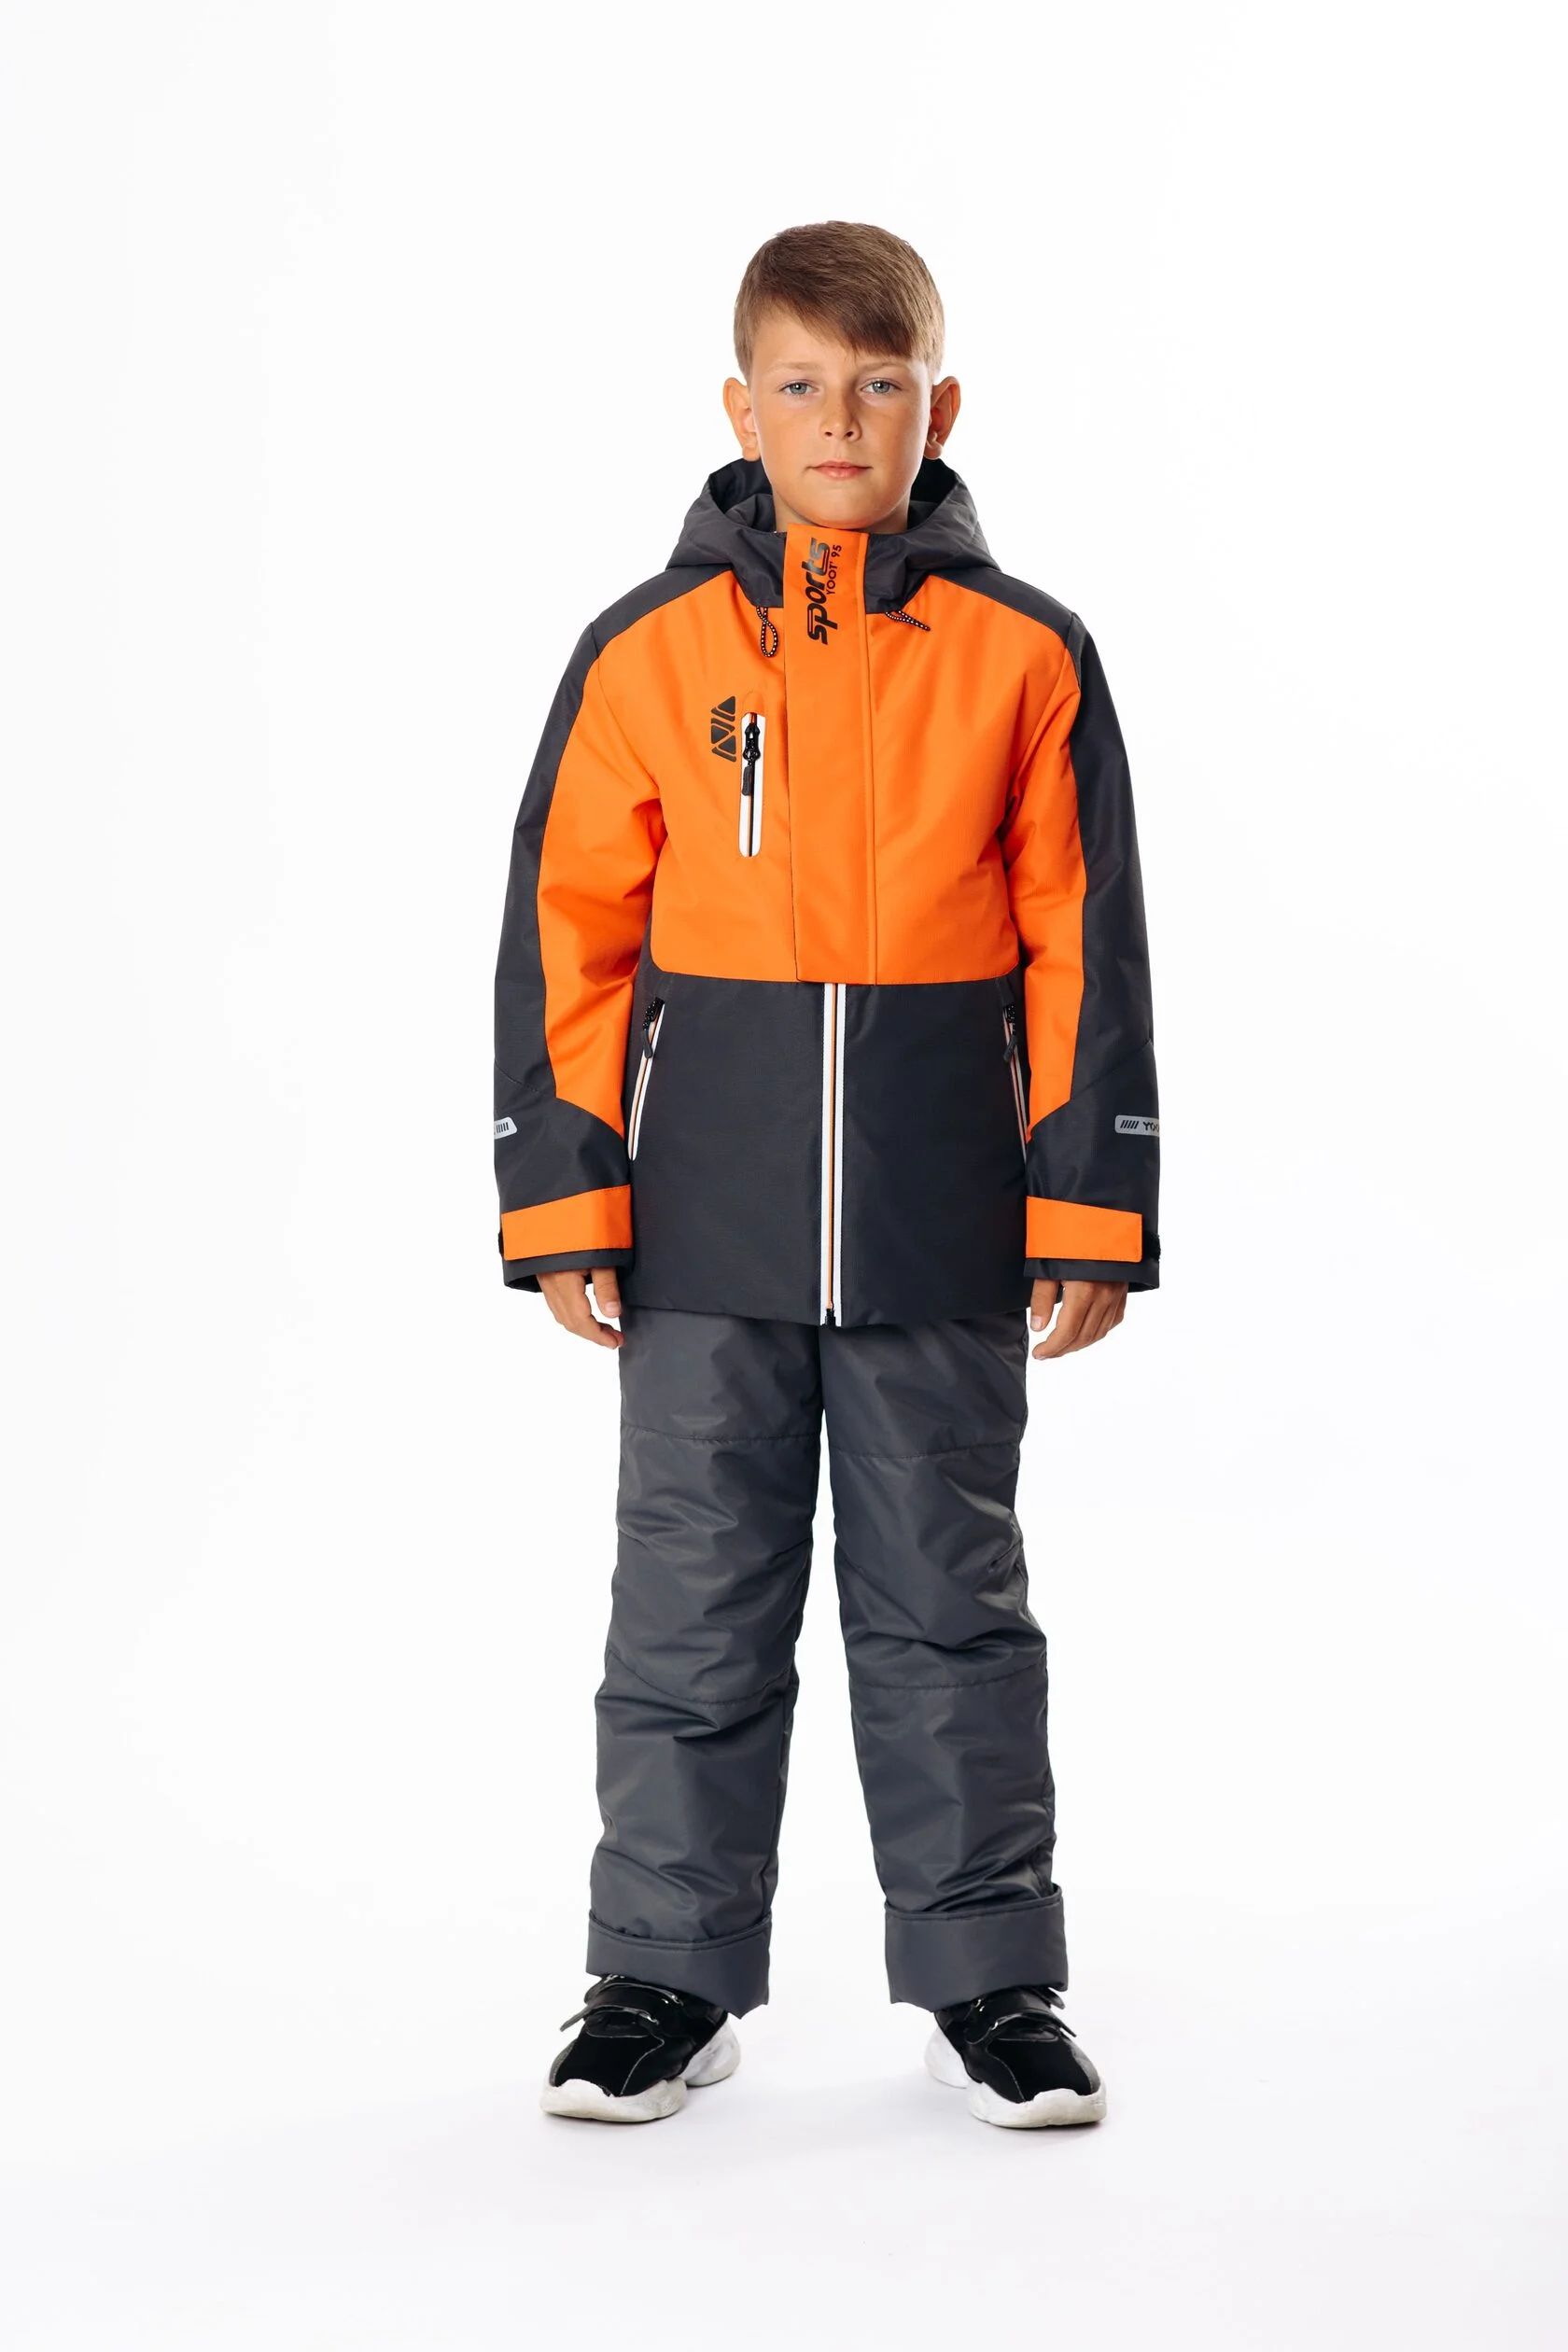 Комплект верхней одежды Yoot 2505 оранжевый, 116 комплект верхней одежды yoot 2505 оранжевый 104